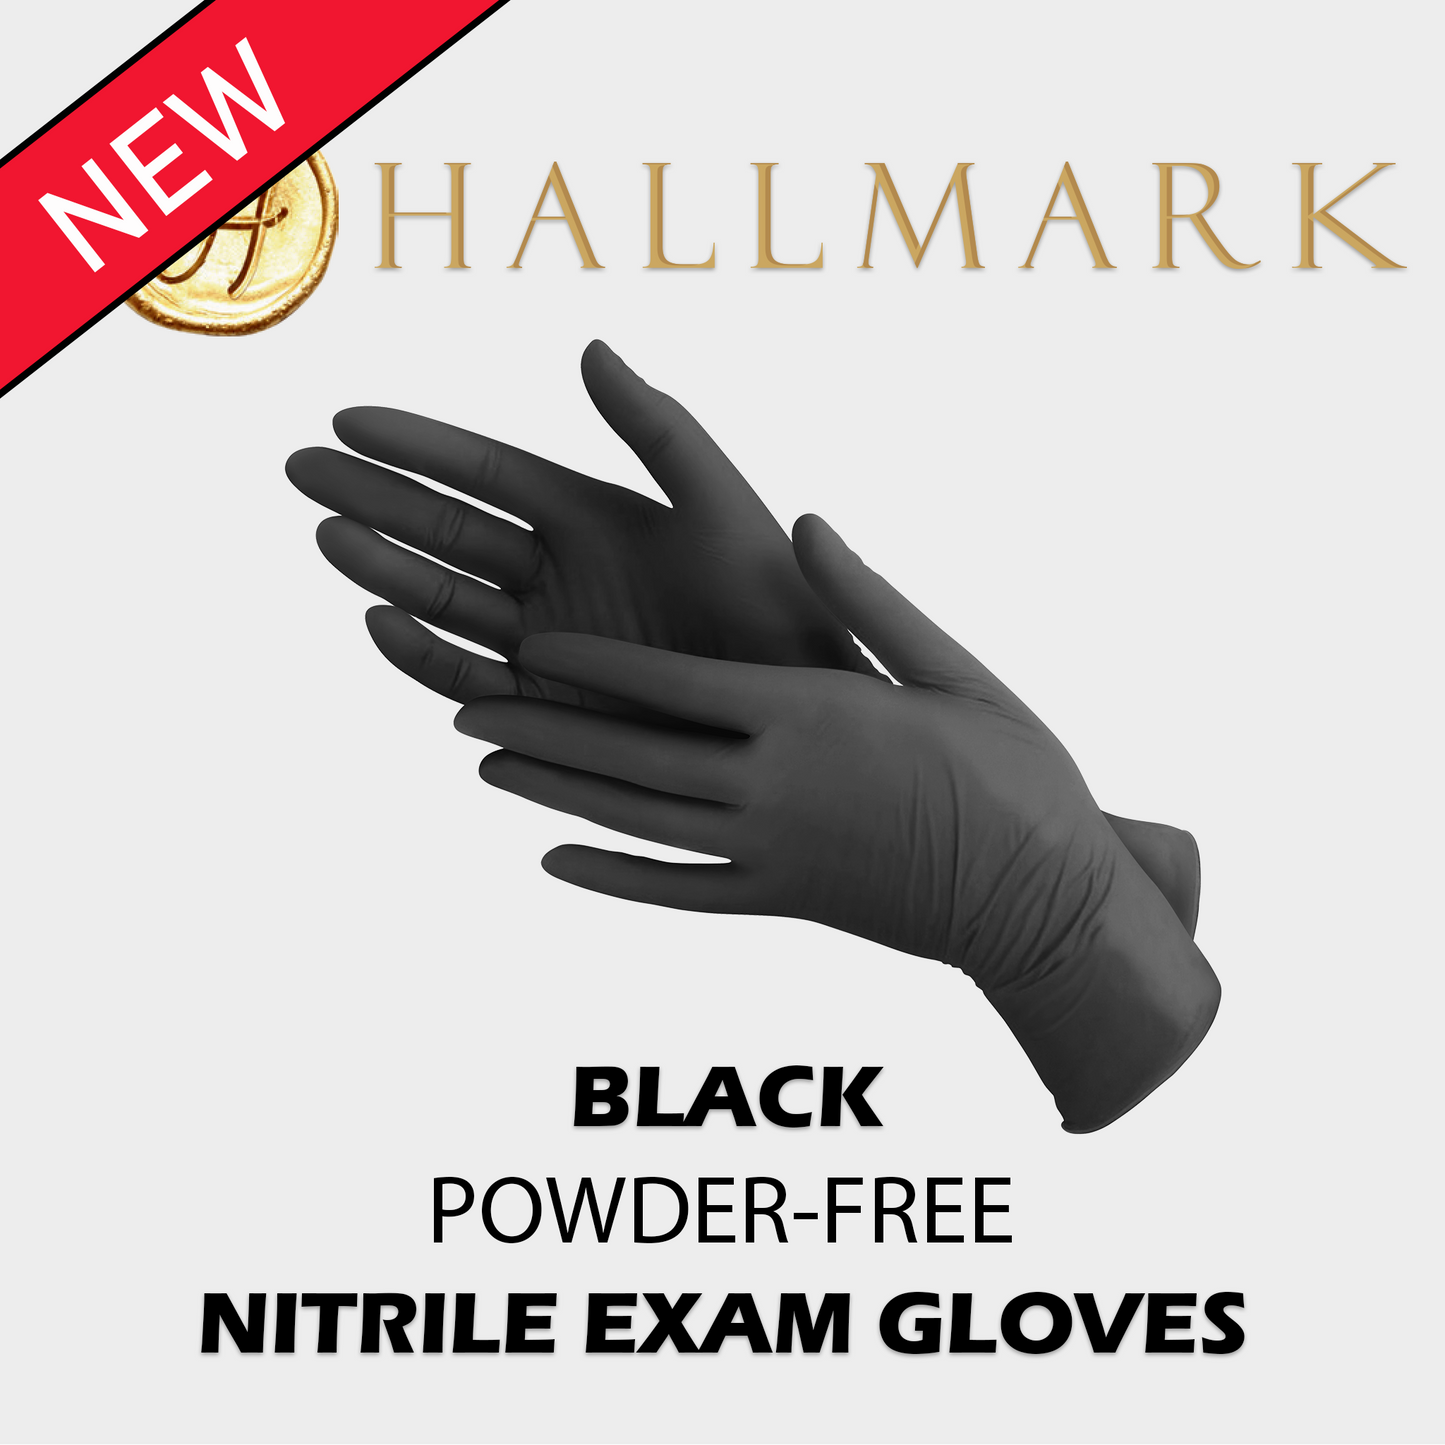 Hallmark Premium Black Nitrile Gloves, $6.95 per box of 100, 10 boxes per carton